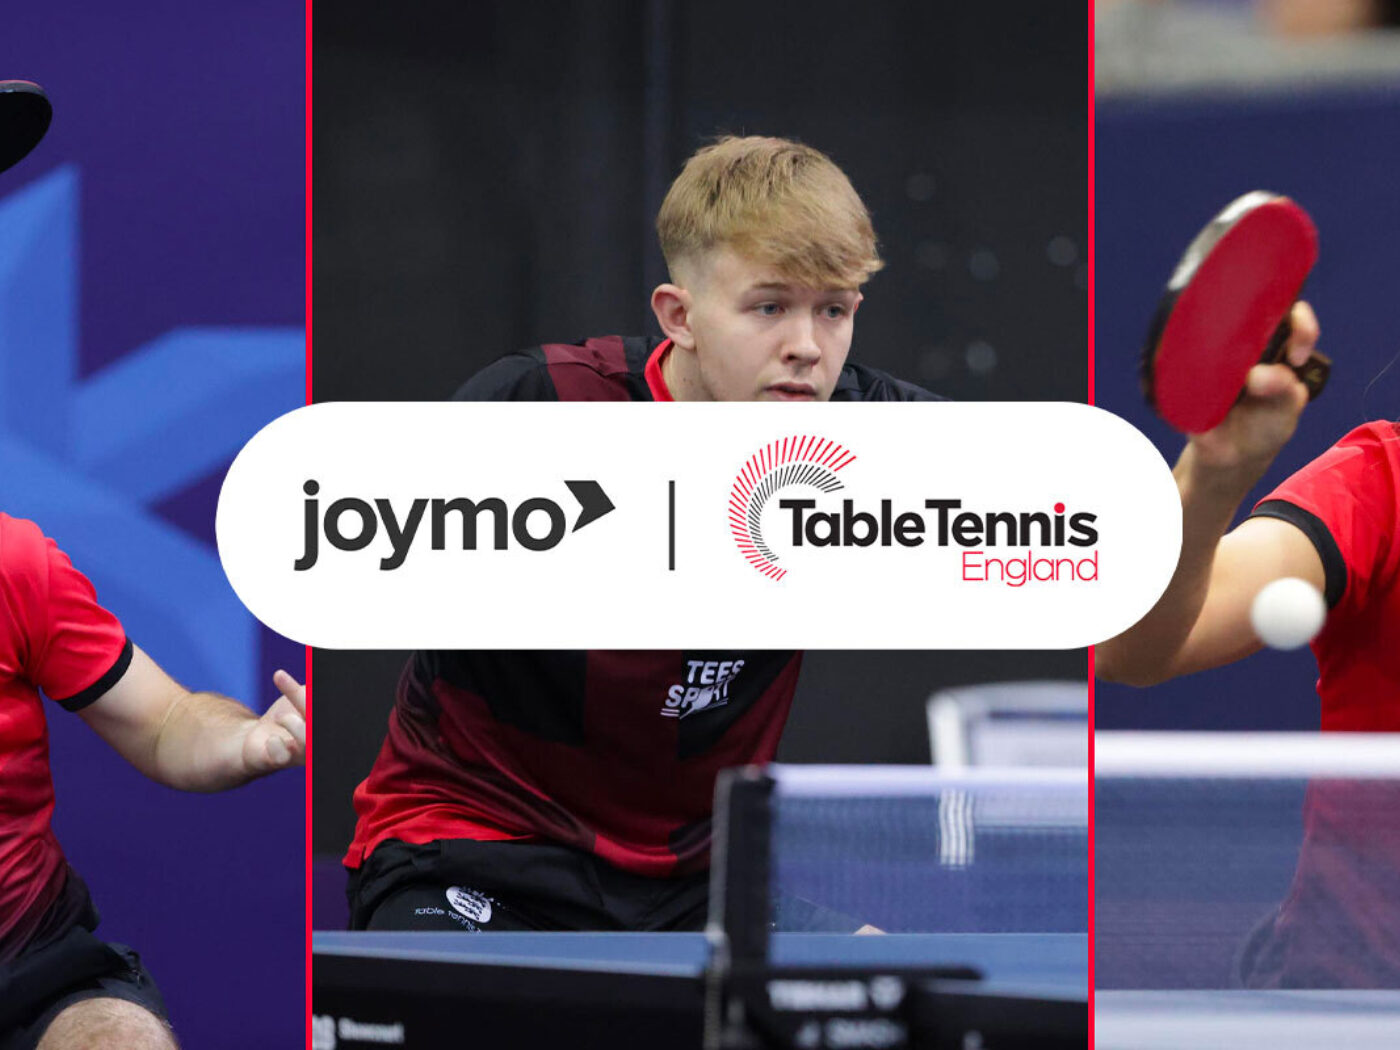 Joymo Strikes Table Tennis England Streaming Service Deal To… Joymo